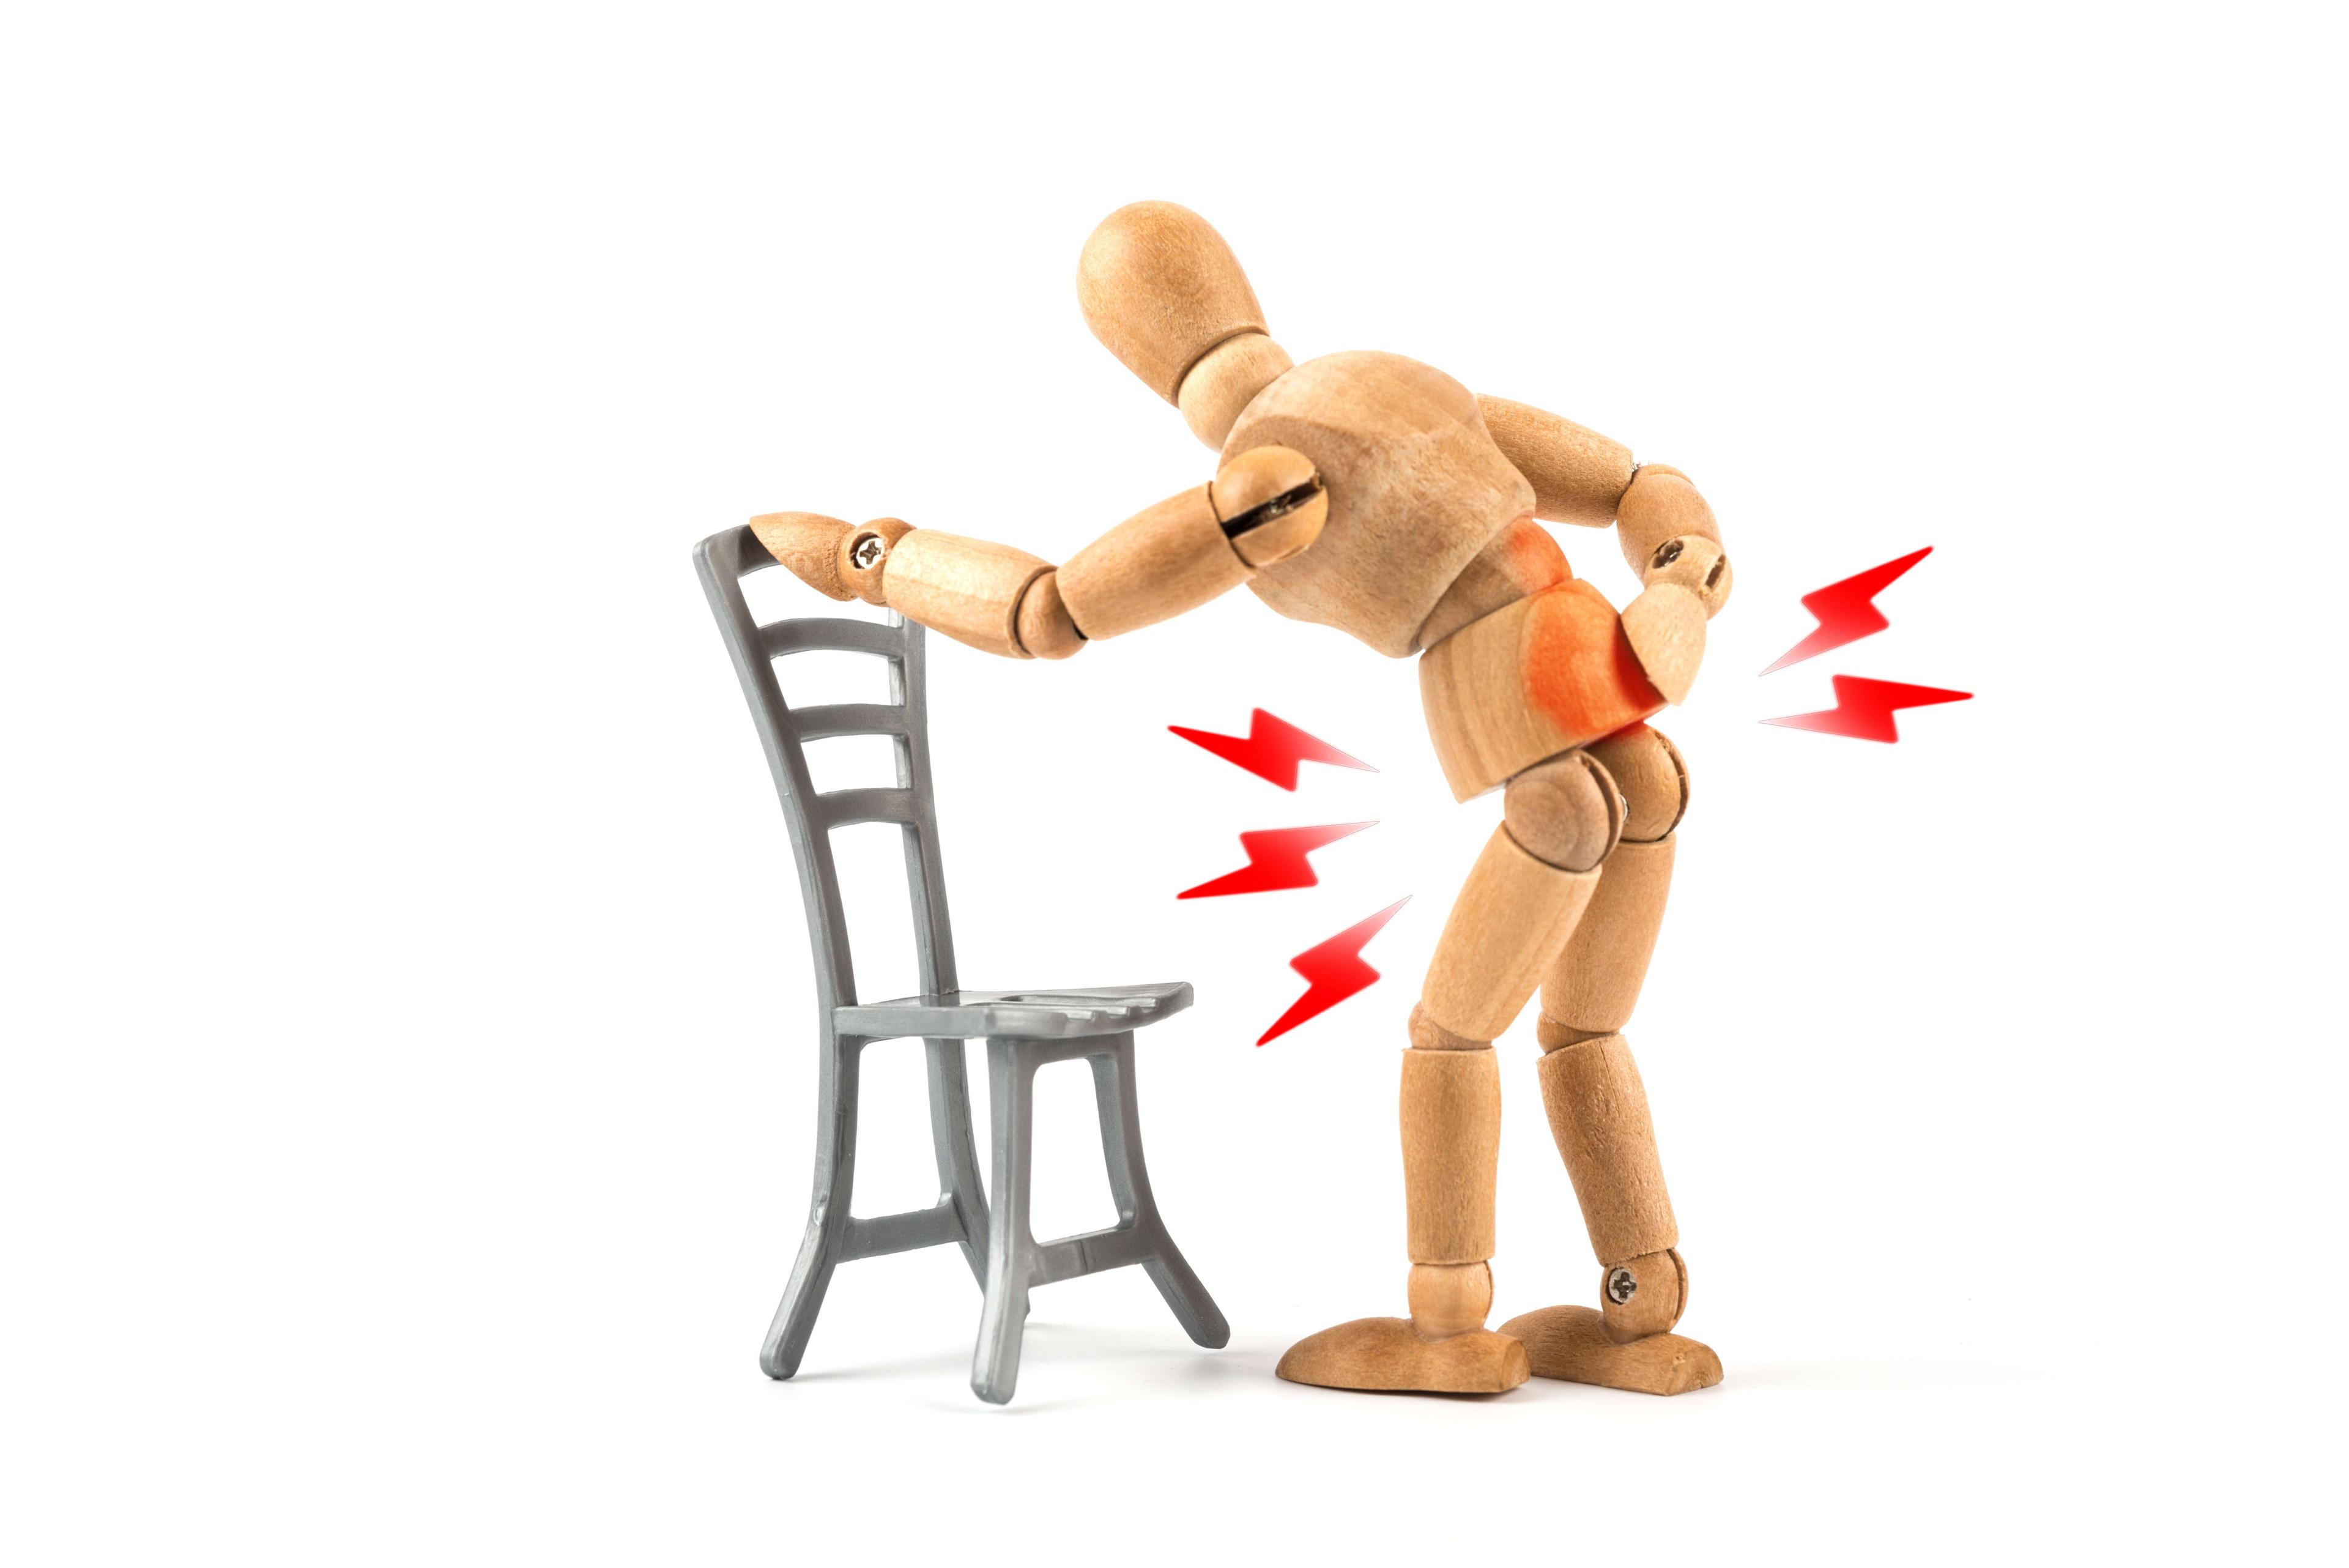 Holzpuppe hat Rückenschmerzen durch falsches Sitzen oder Stehen